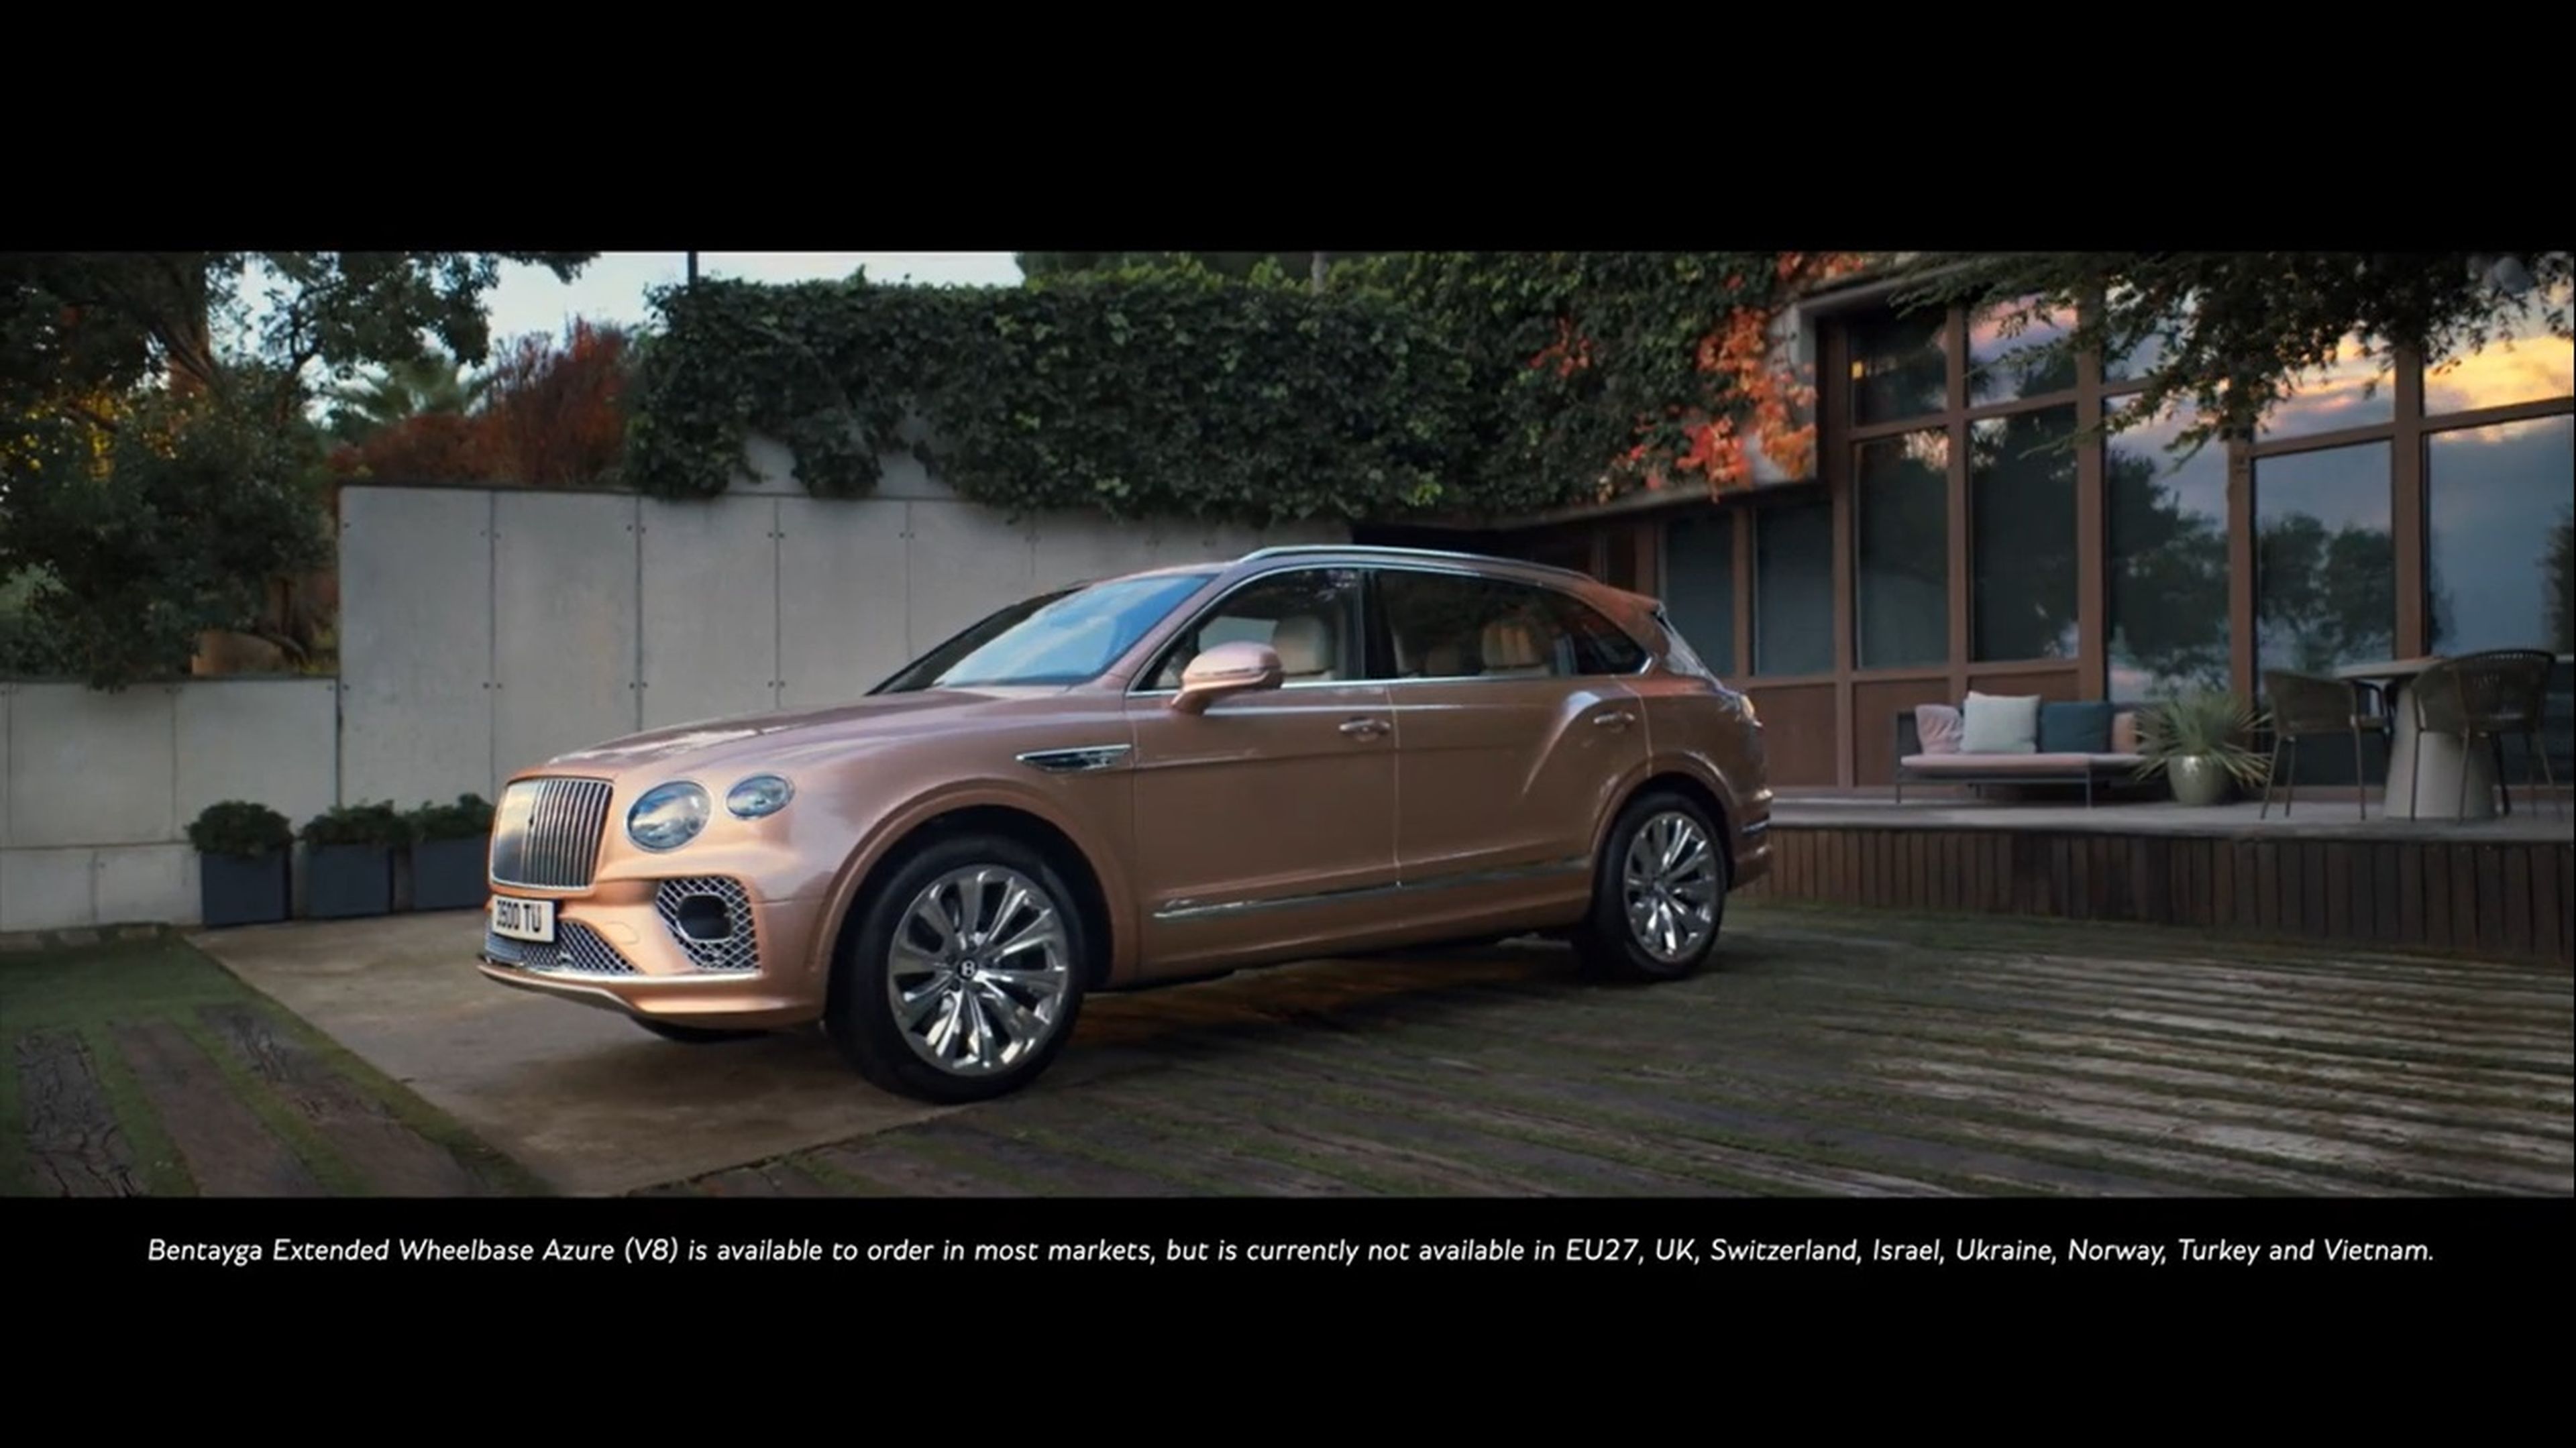 VÍDEO: Bentley Bentayga Extended Wheelbase, así es el Bentayga más espacioso